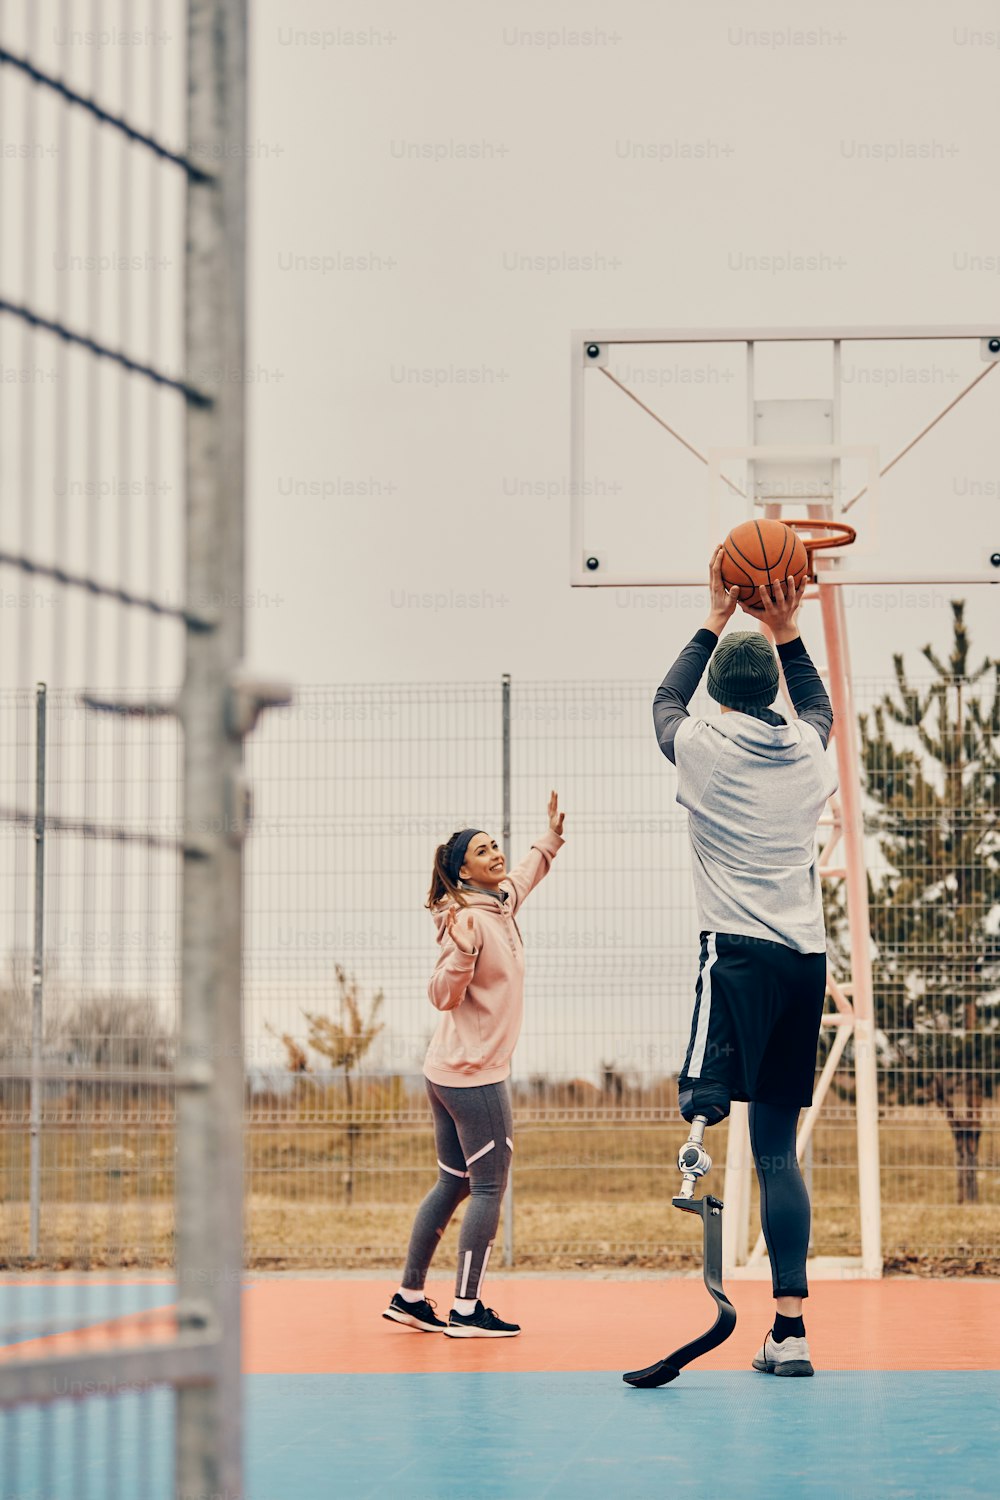 女性の友人とバスケットボールをし、屋外のスポーツコートでフープで撮影する義足のスポーツマンの後ろ姿。